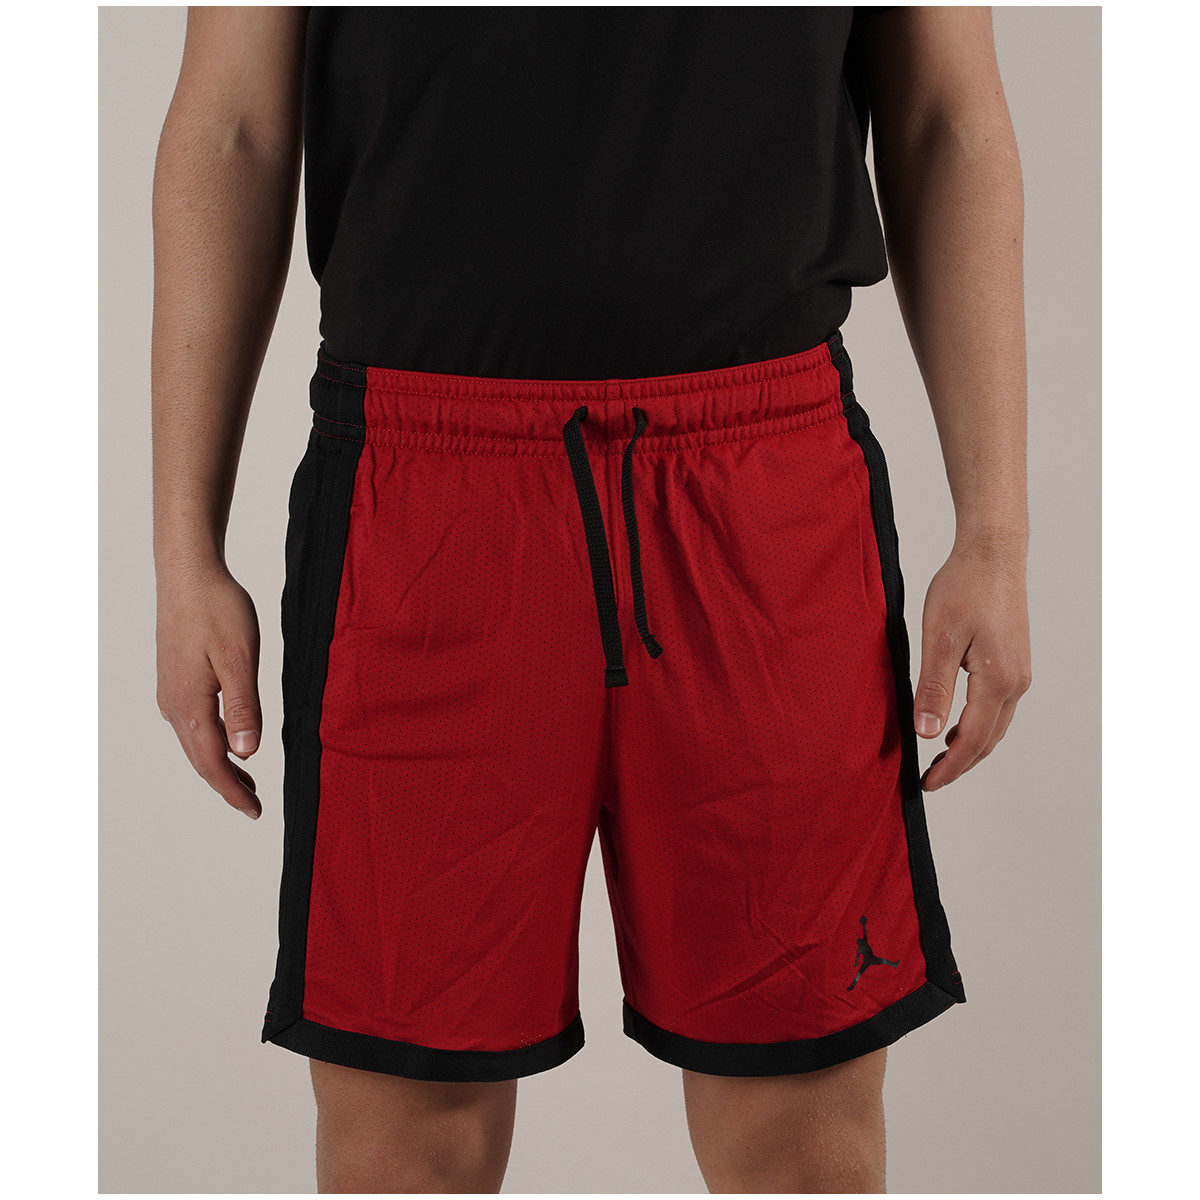 Abbigliamento Uomo Shorts / Bermuda Nike SHORT DRI FIT Multicolore